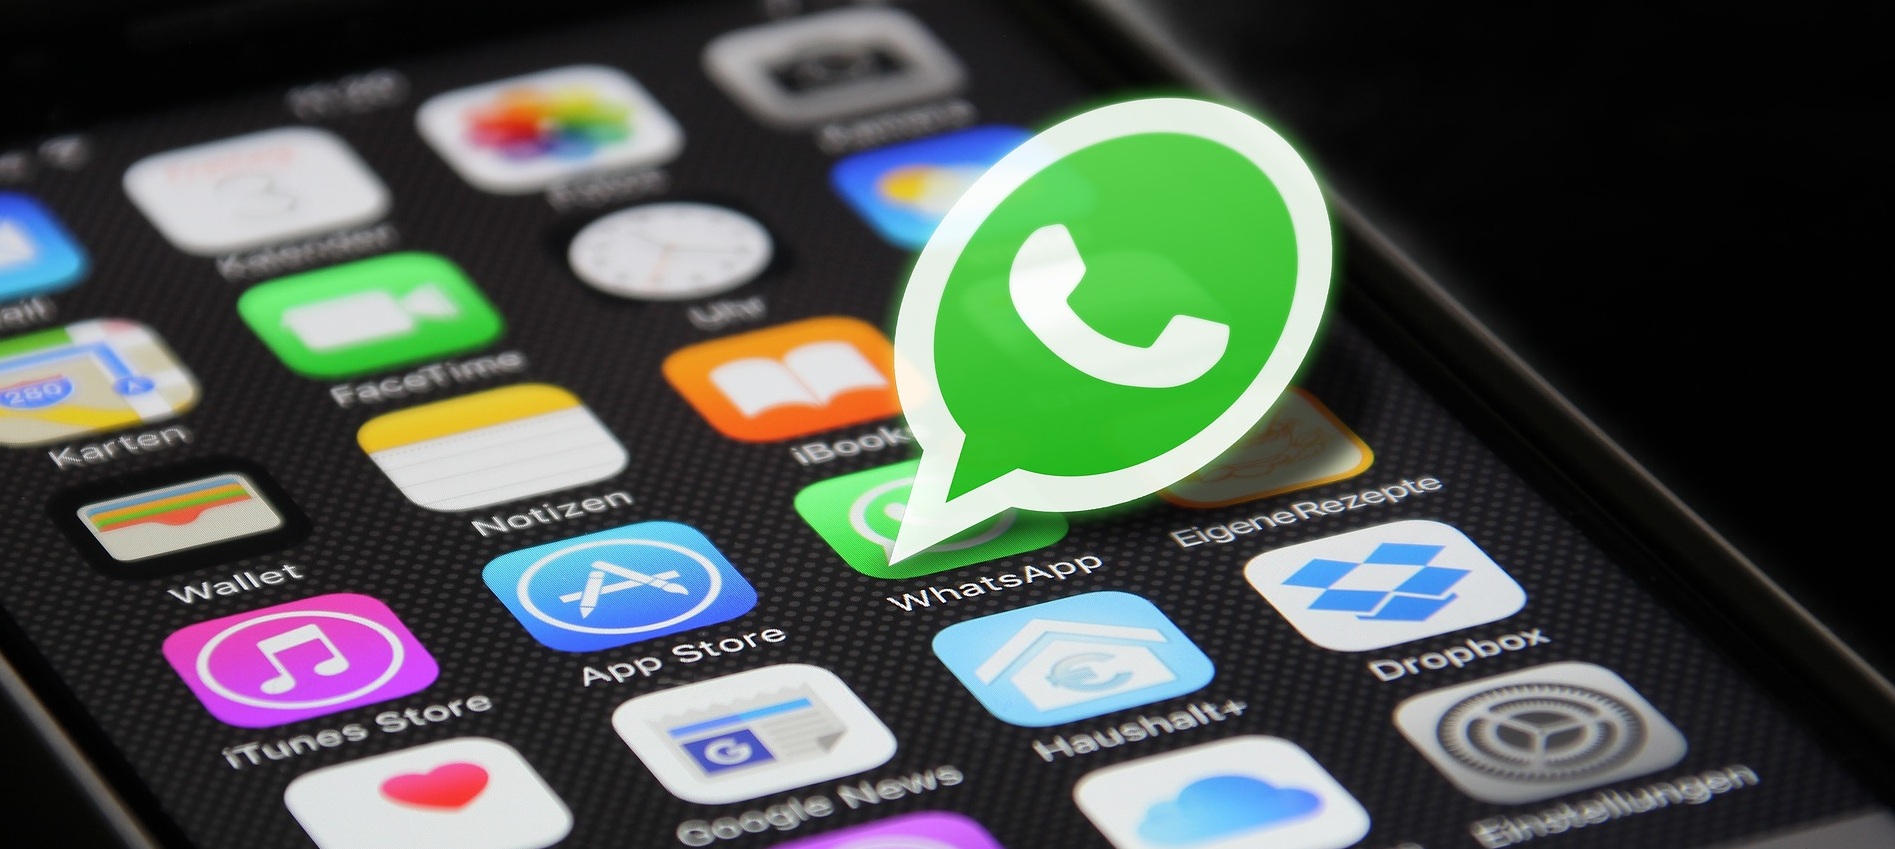 En estos celulares dejará de funcionar WhatsApp a partir de enero de 2020